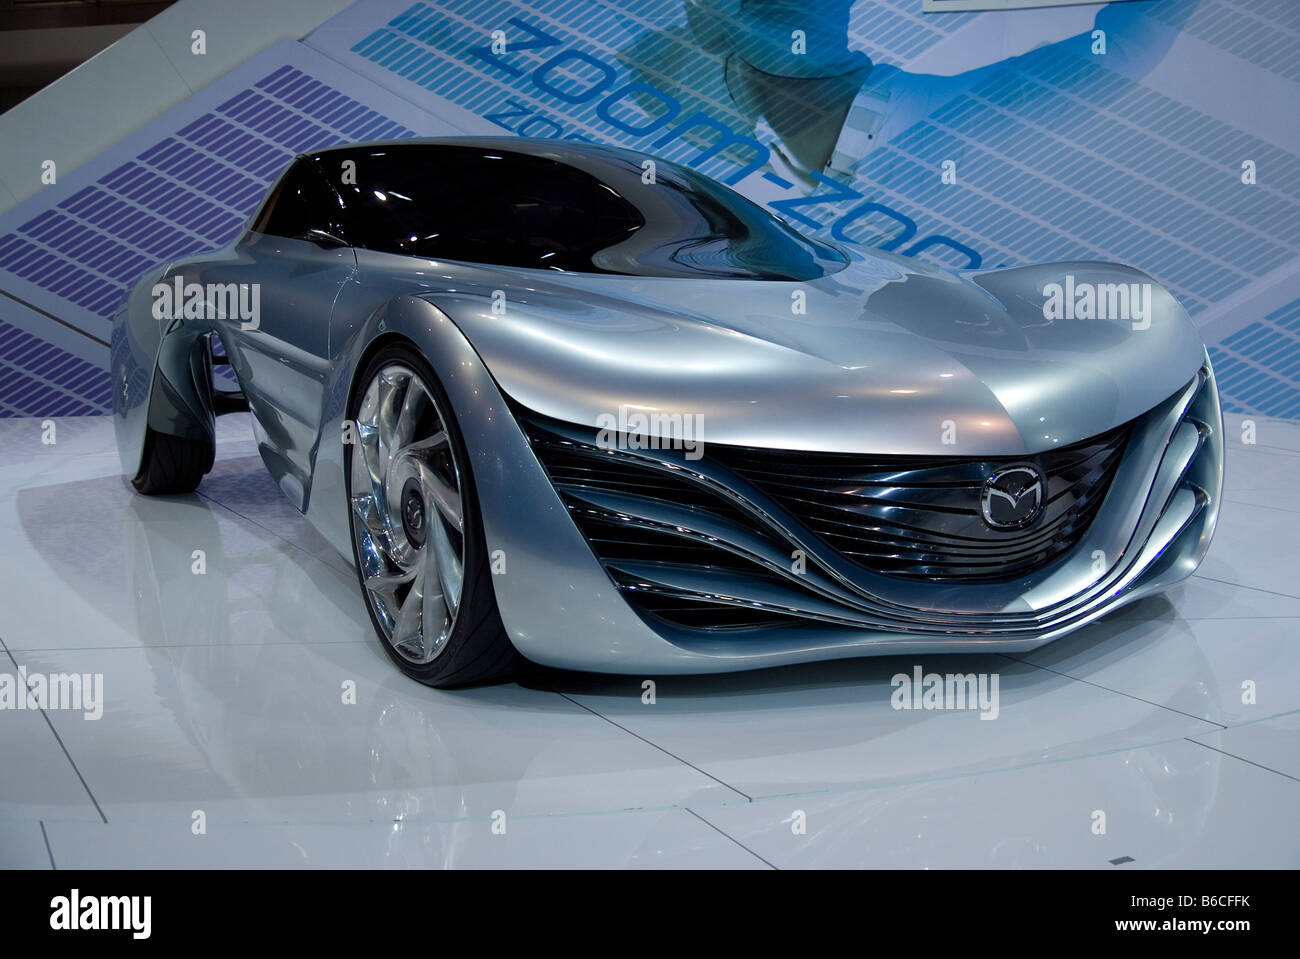 Mazda Taiki concept car Stock Photo